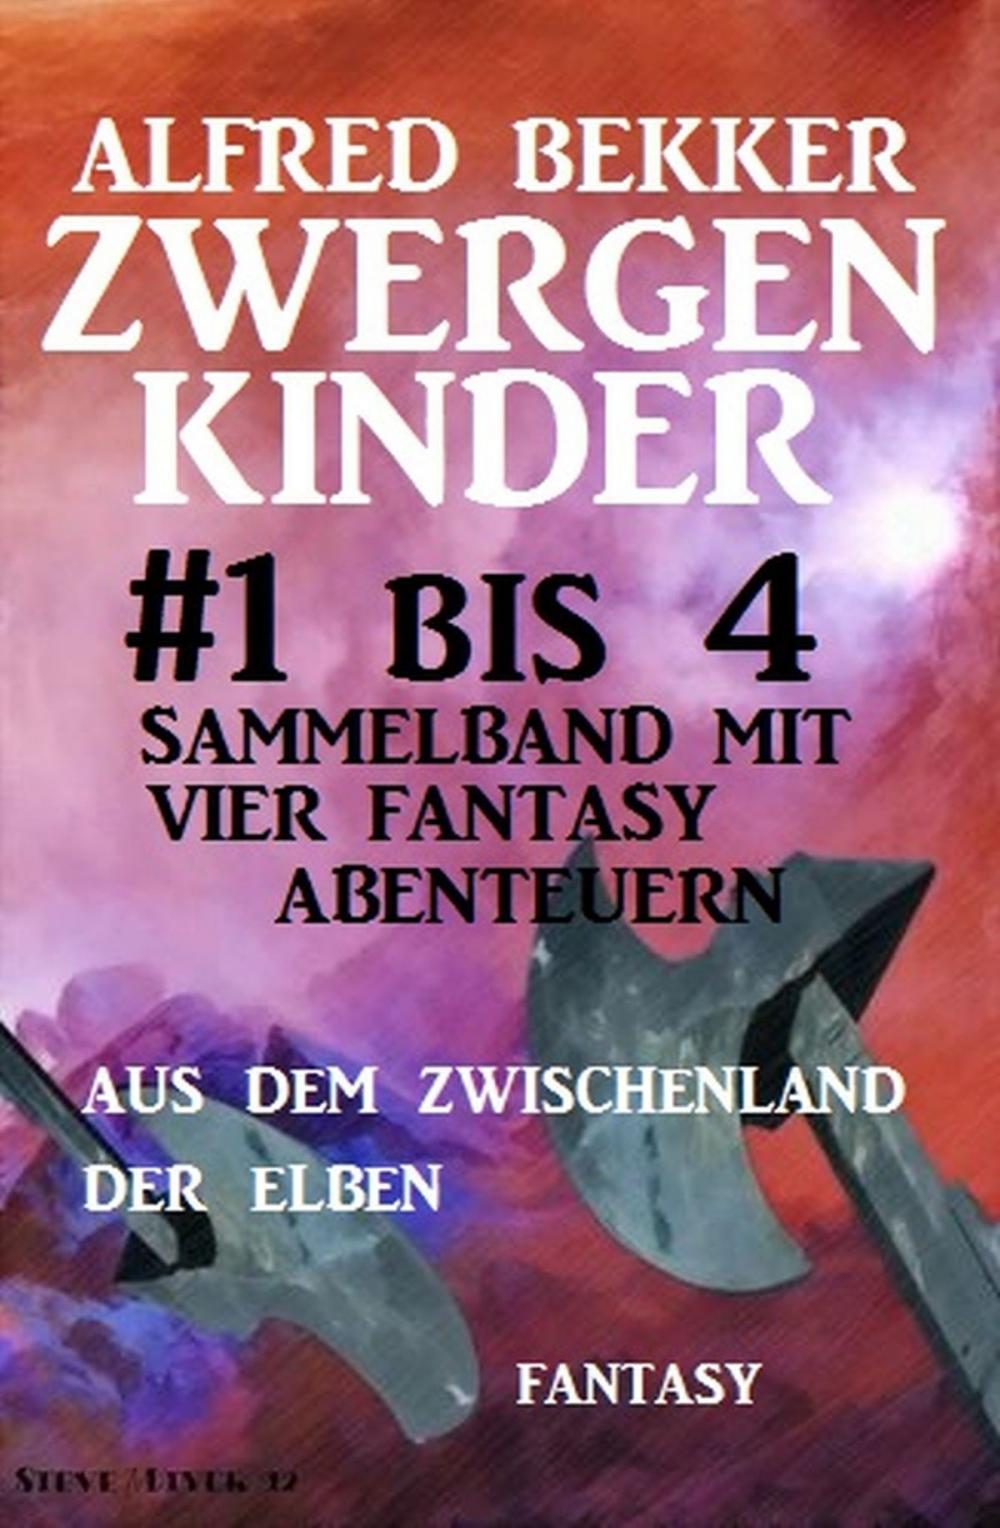 Big bigCover of Zwergenkinder #1 bis 4: Sammelband mit vier Fantasy Abenteuern aus dem Zwischenland der Elben